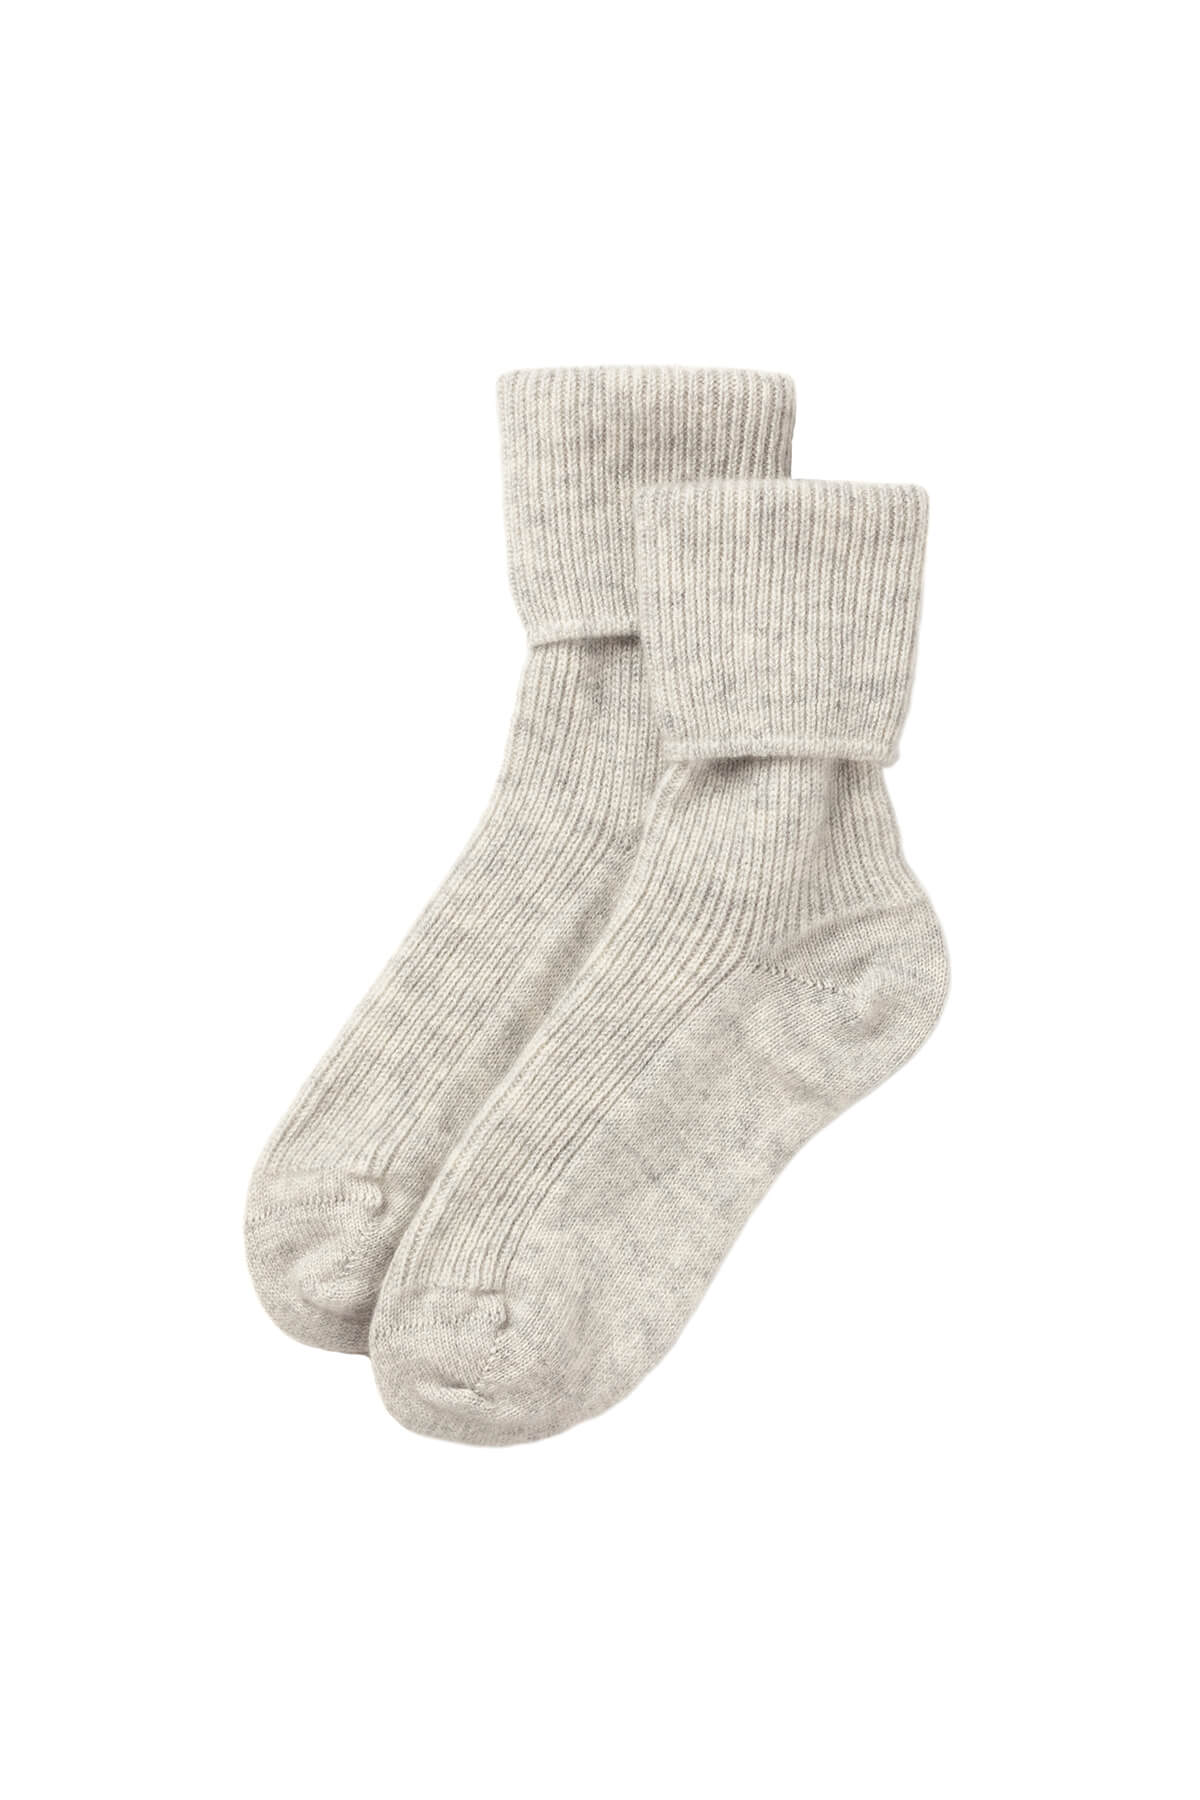 Bed Socks - Cashmere